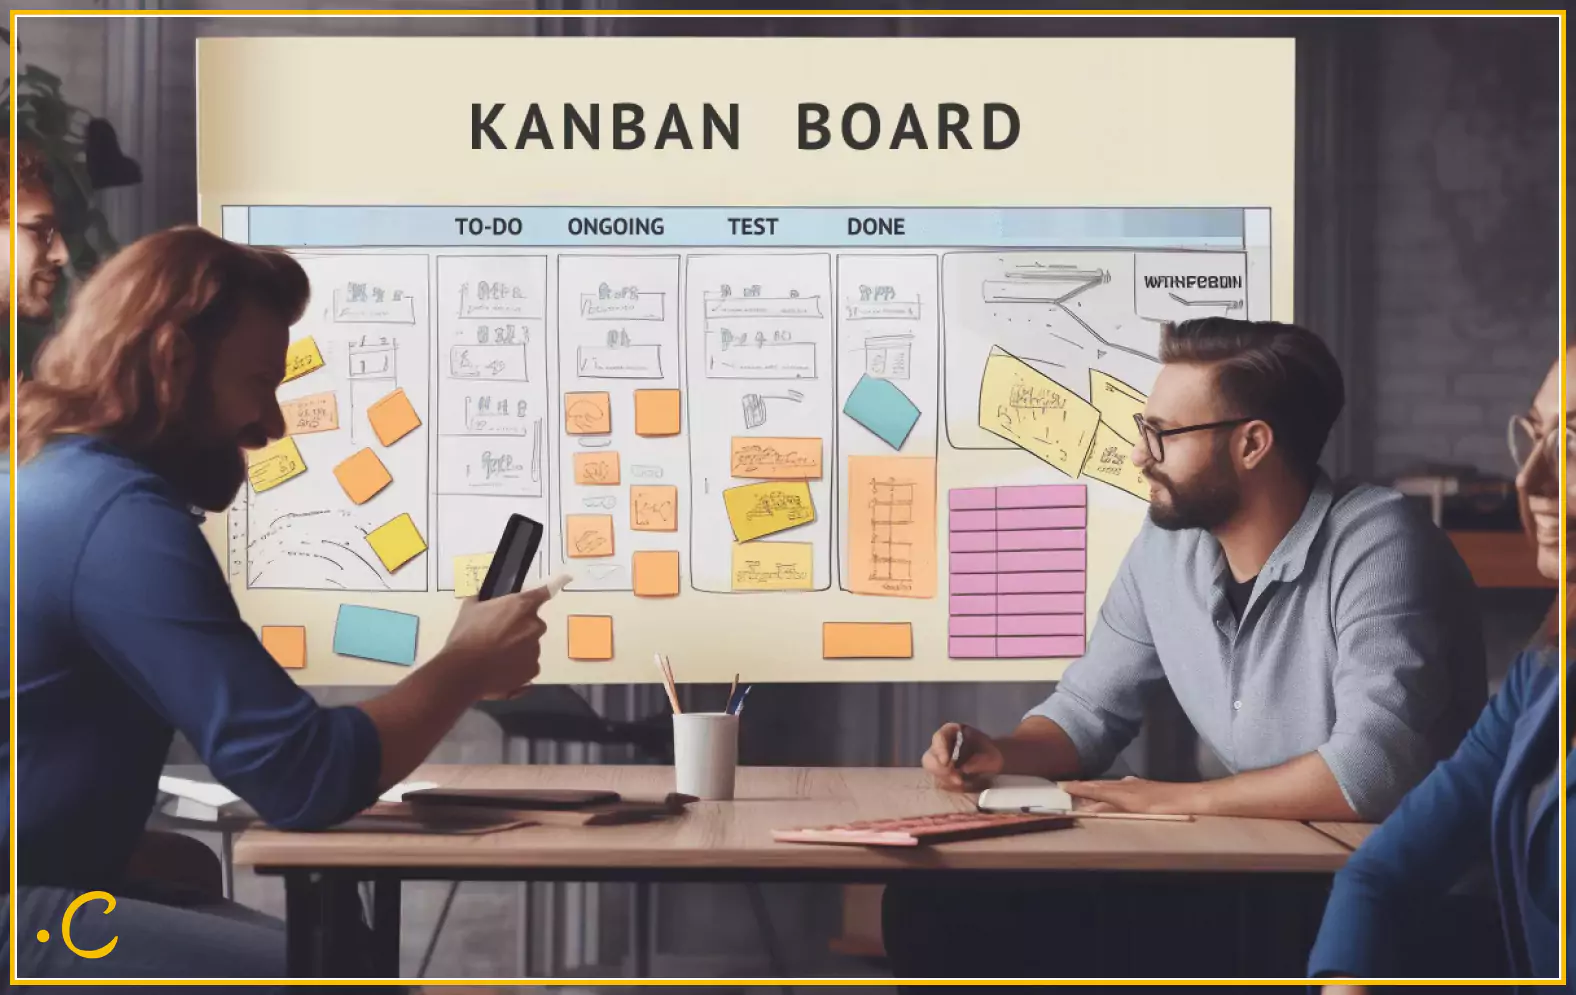 Scrum vs Kanban: Kanban Board